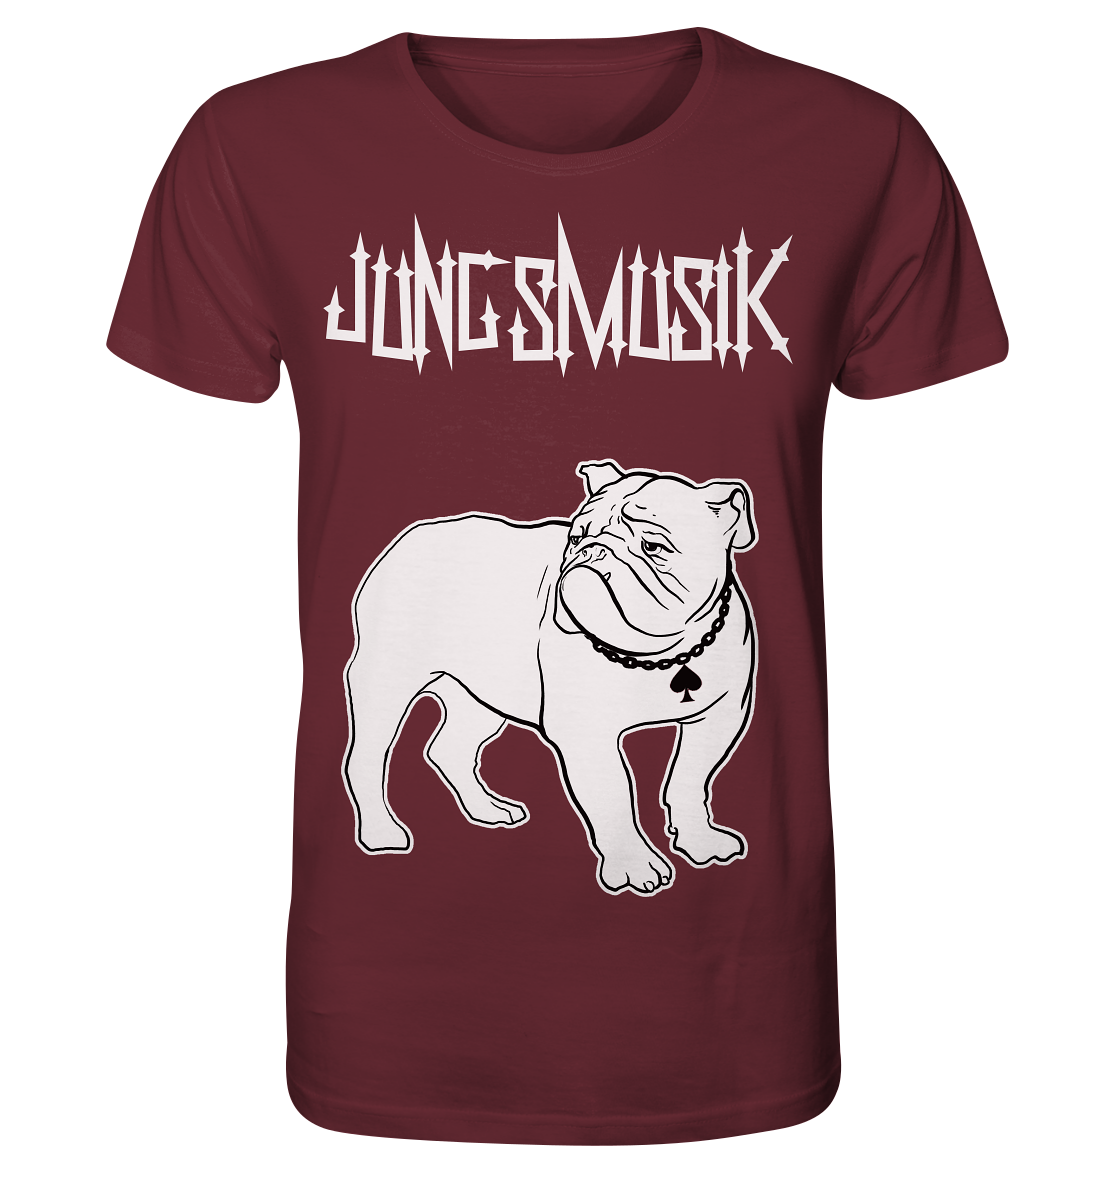 Ein Artbookings/Shirtigo-Damen-T-Shirt mit einem Bulldoggenbild, inspiriert von der Poetry-Slam-Kultur und als Merchandise erhältlich – Micha-El Goehre: Jungsmusik – T